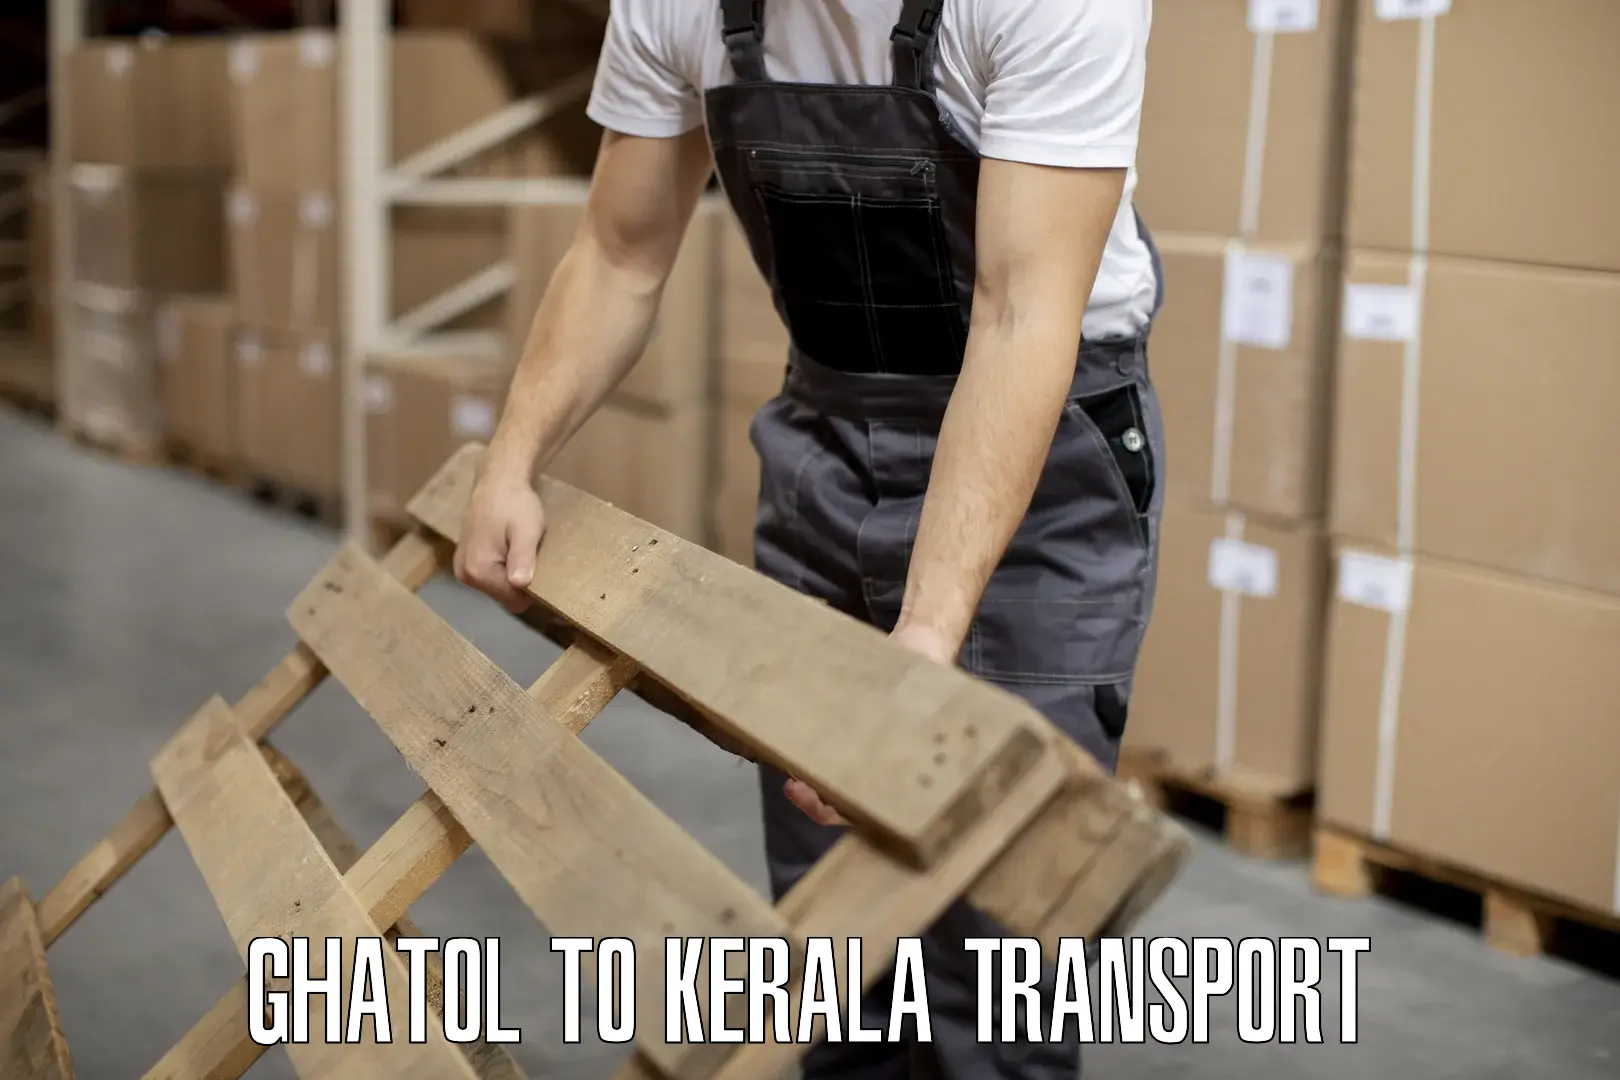 Transport in sharing Ghatol to Kottarakkara